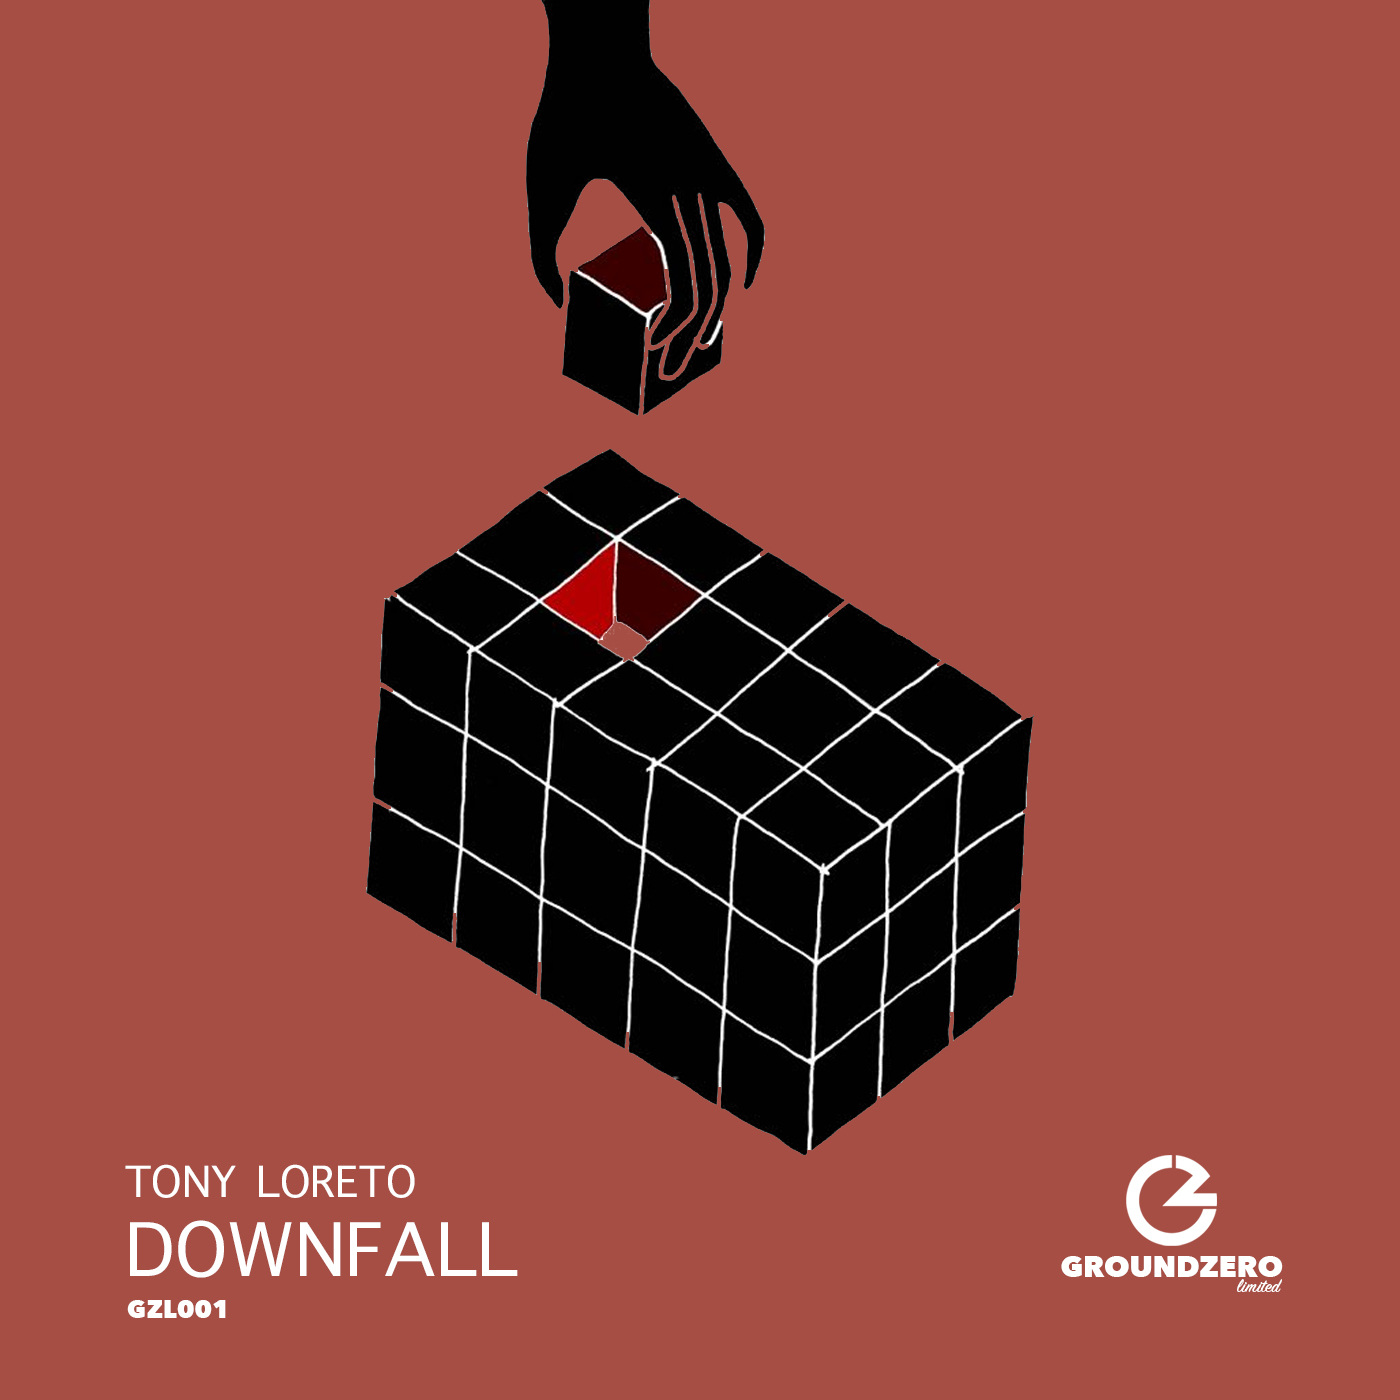 Tony Loreto - Downfall / Ground Zero Limited